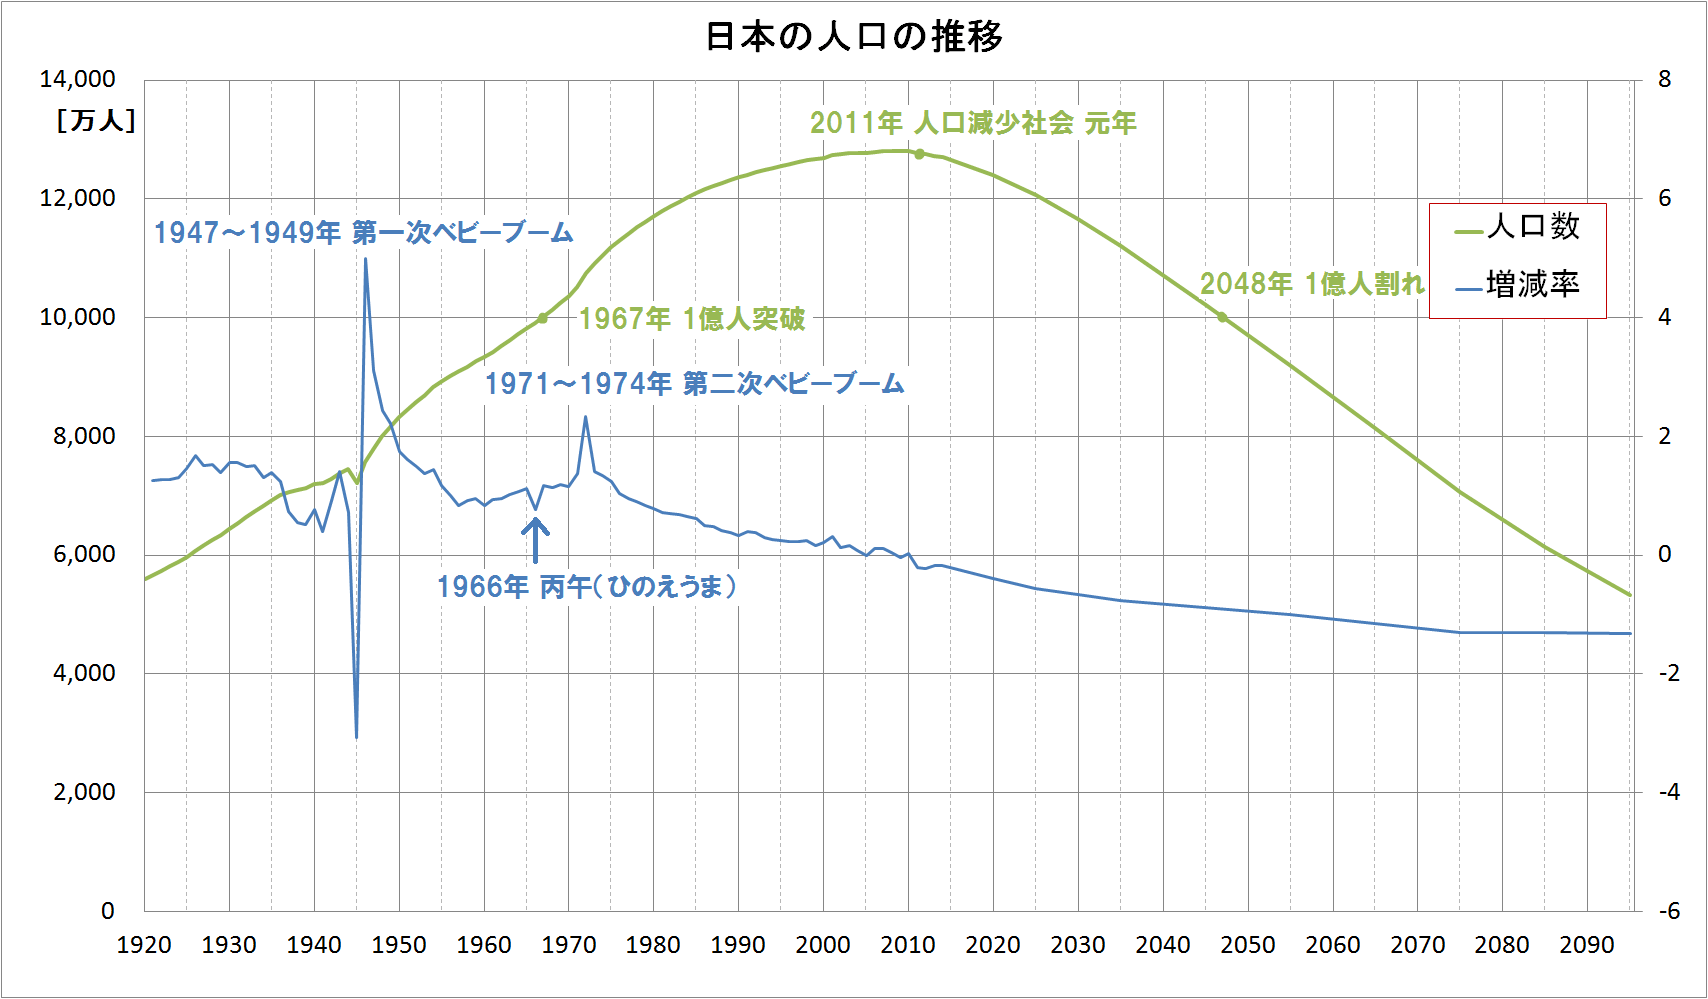 日本の人口の推移と増減率